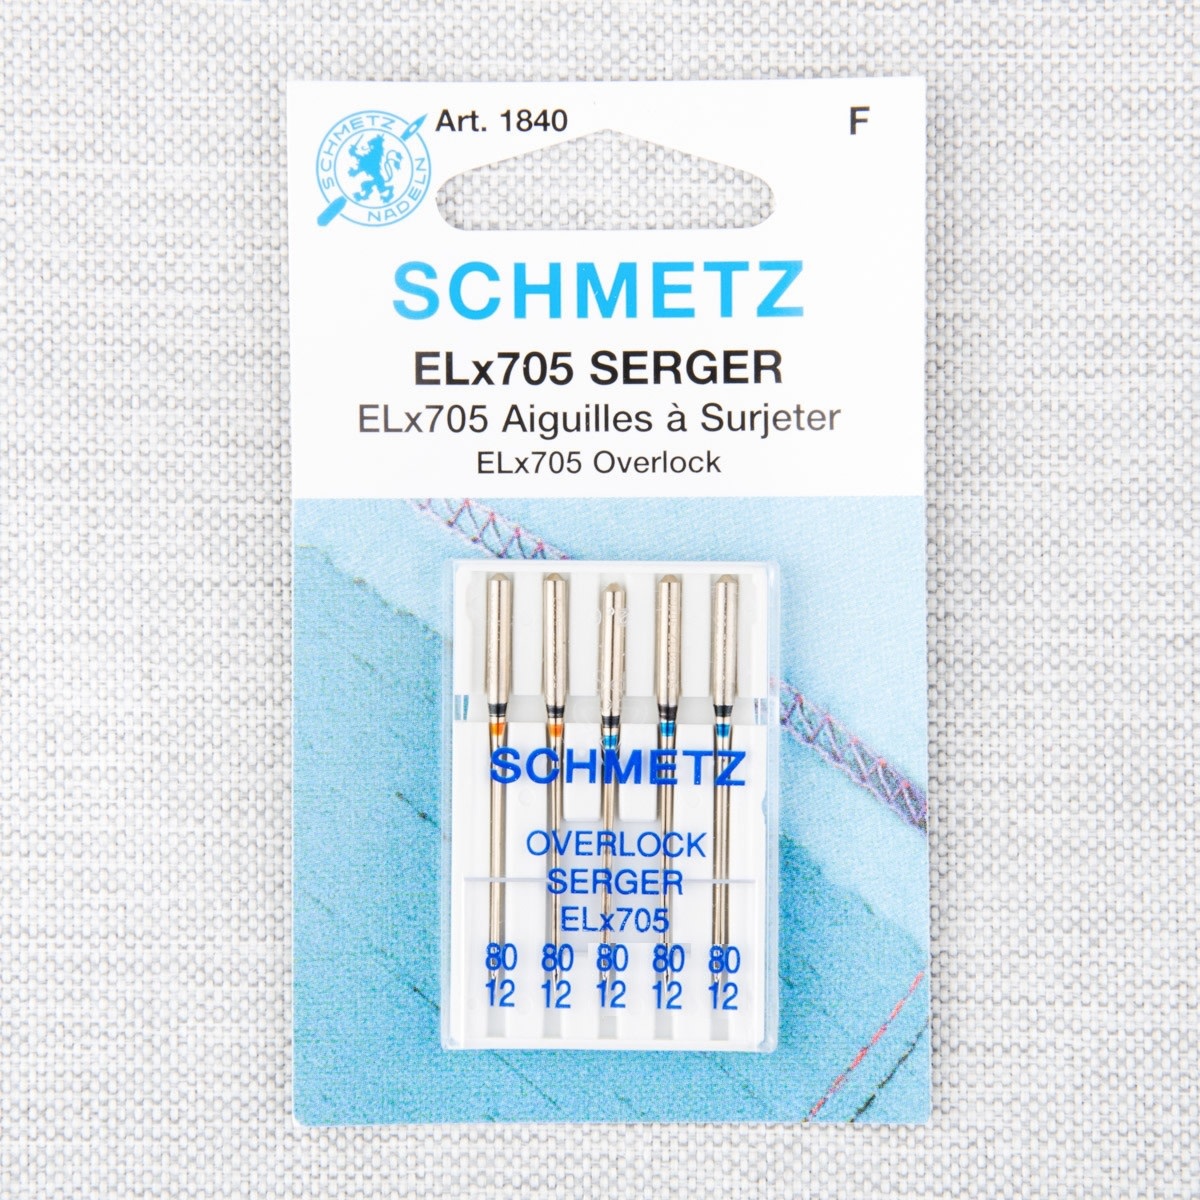 Schmetz Aiguilles à surjeteuse Schmetz #1820 Elx705 - 80/12 - 5 unités